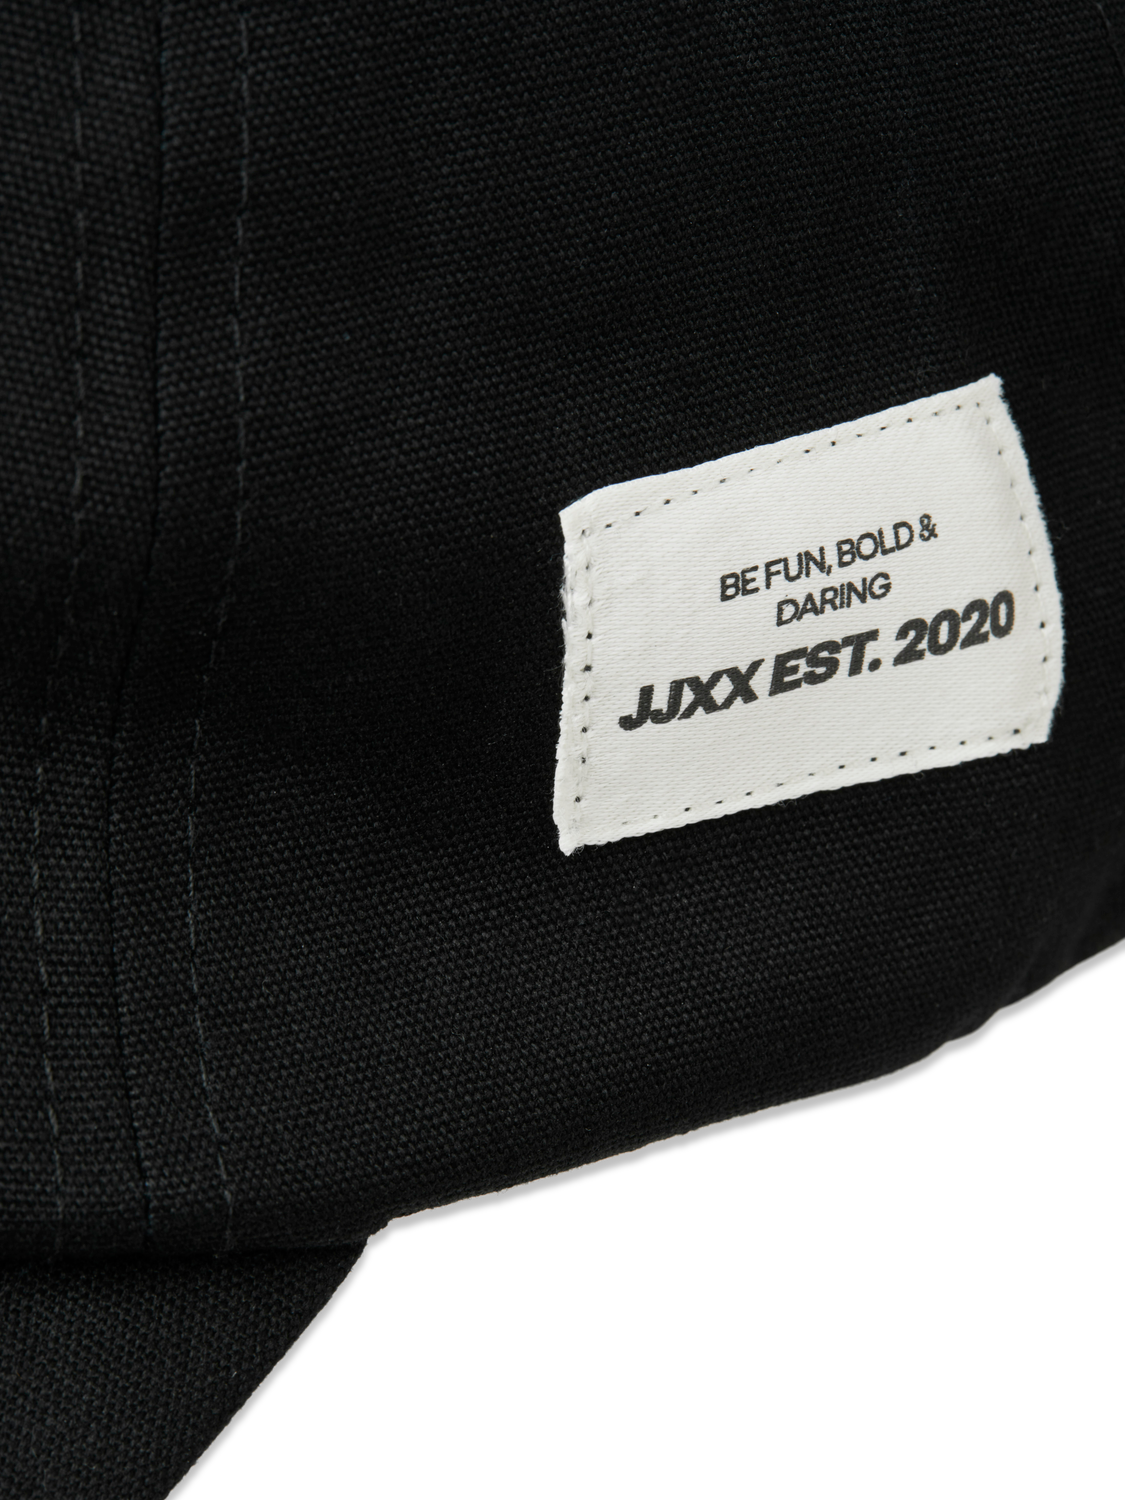 JJXX JXBEE Baseball cap -Black - 12250795